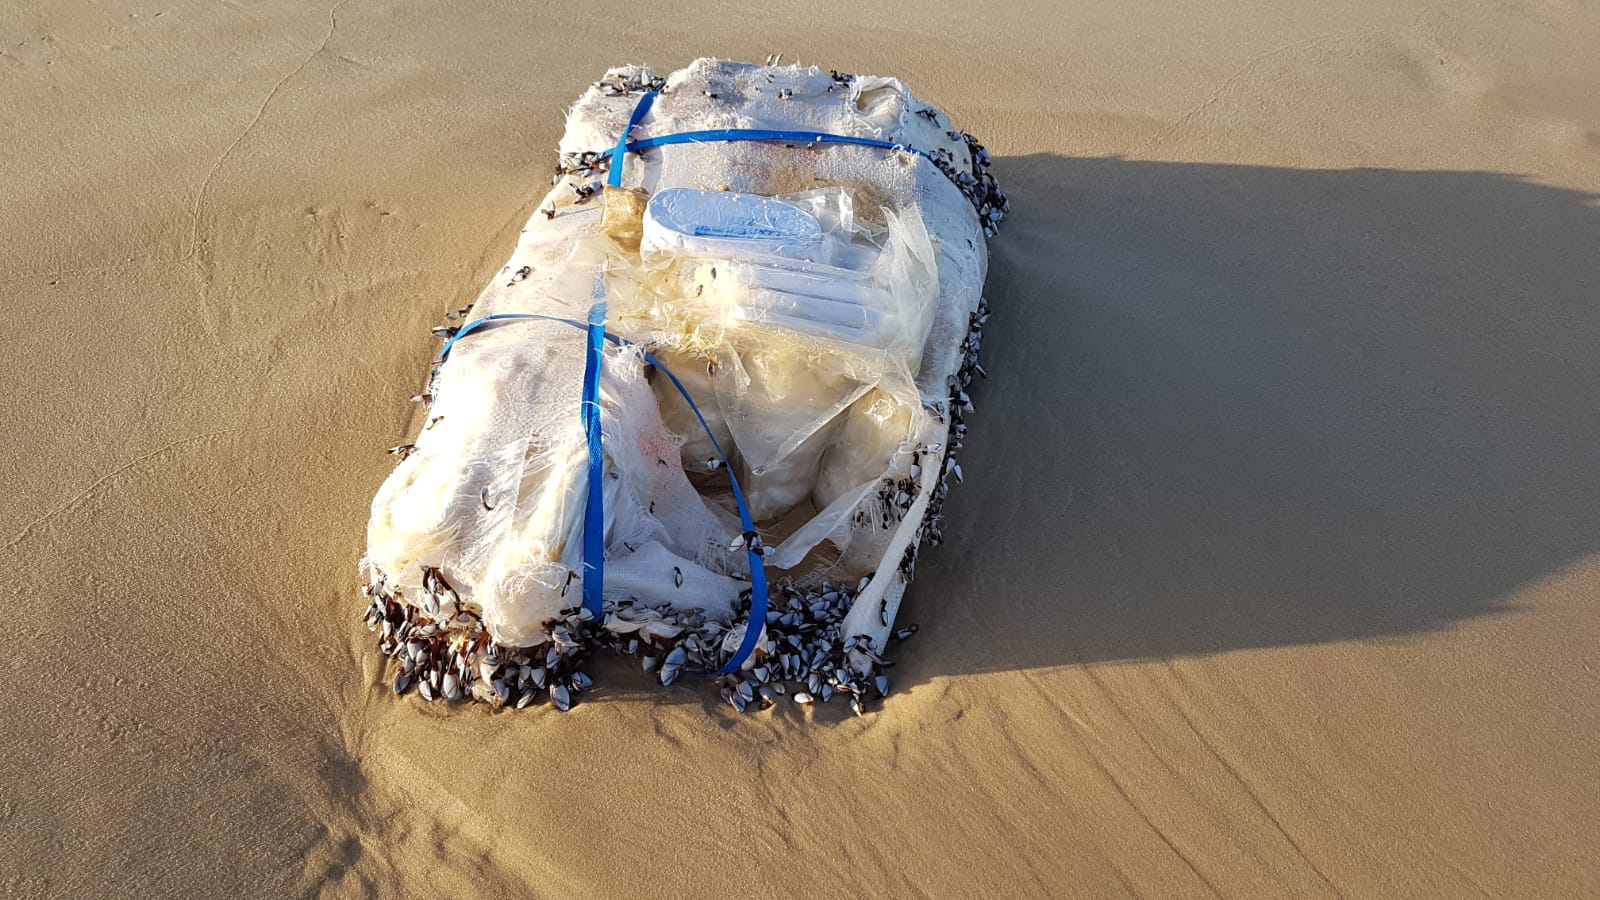 ضبط كيس يحتوي على أكثر من 20 كيلوغراما من السموم على شاطئ بحر اشدود